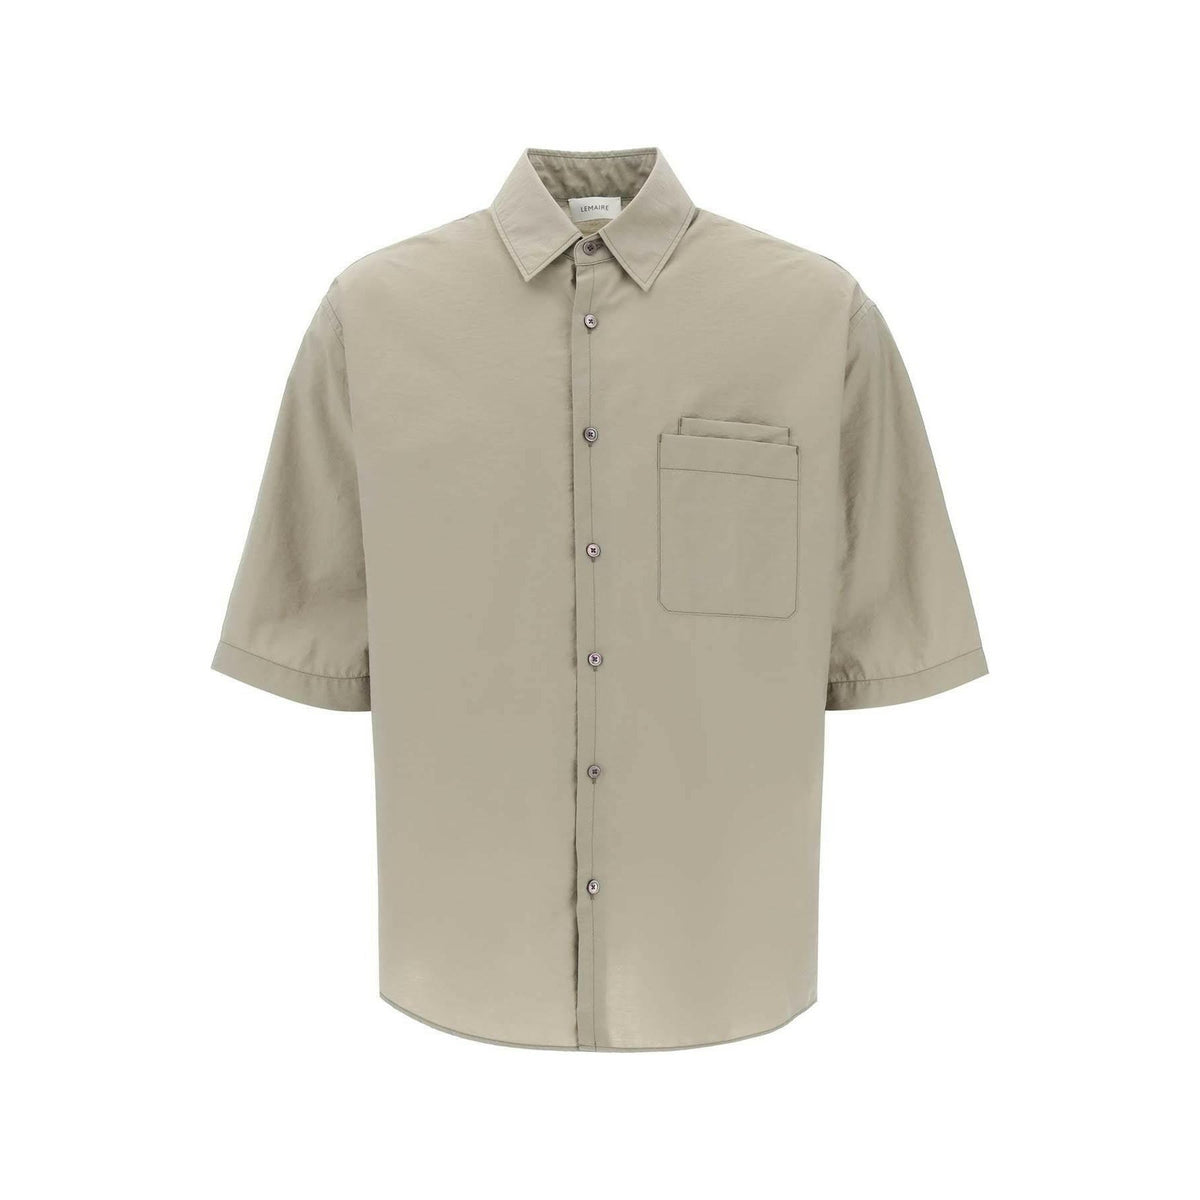 LEMAIRE - Dusty Khaki Washed Technical Cotton Double Pocket Short Sleeve Shirt - JOHN JULIA